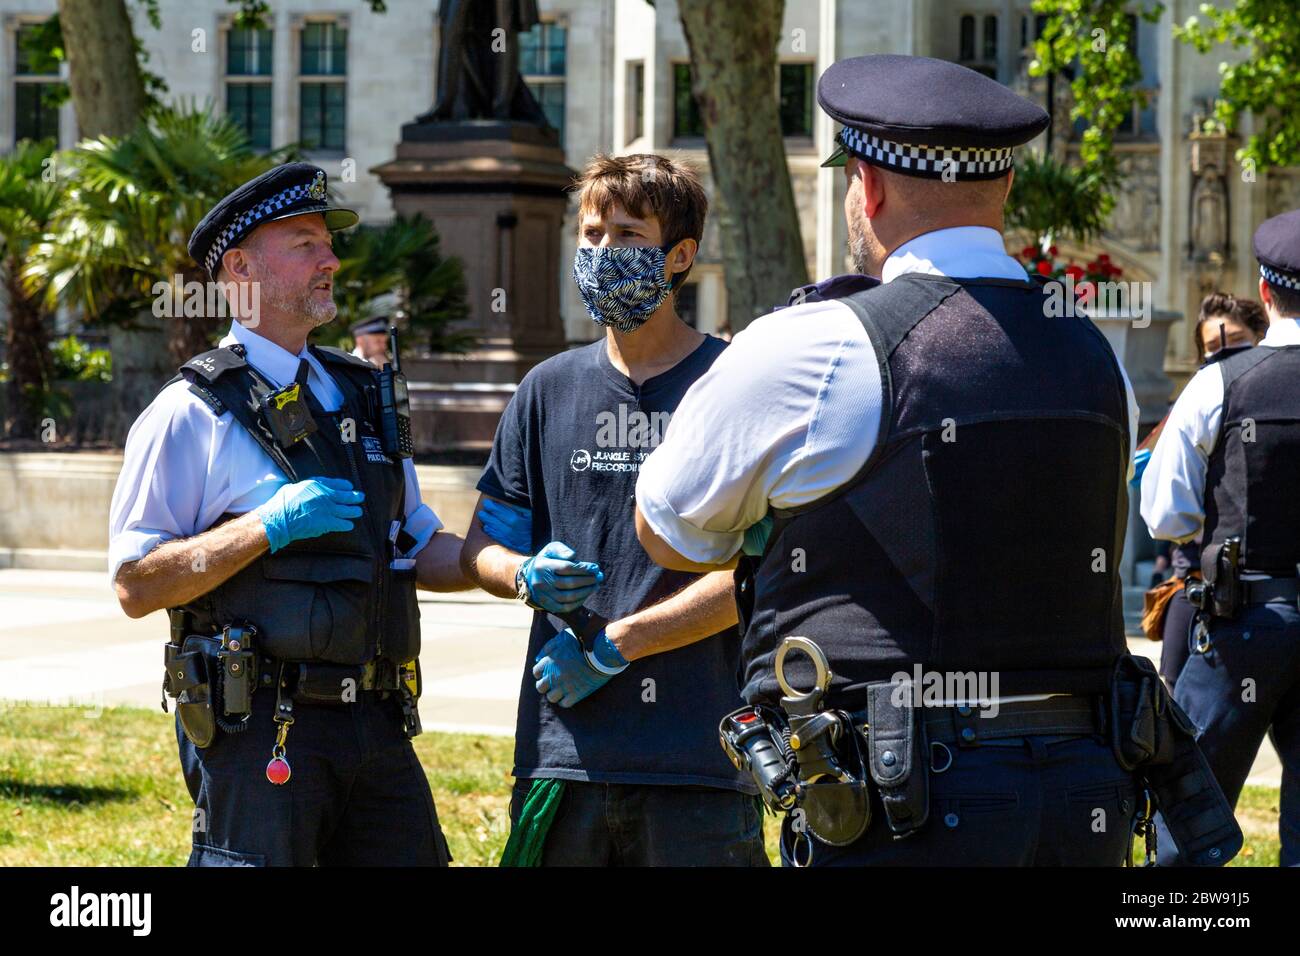 30 maggio 2020 Londra, UK - la ribellione estinguente ha tacito a Westminster la protesta socialmente distanziata contro i cambiamenti climatici, i manifestanti sono stati multati e portati via dalla polizia per aver violato le norme del coronavirus, l'uomo in maschera manomessa, arrestato e tenuto da ufficiali di polizia Foto Stock